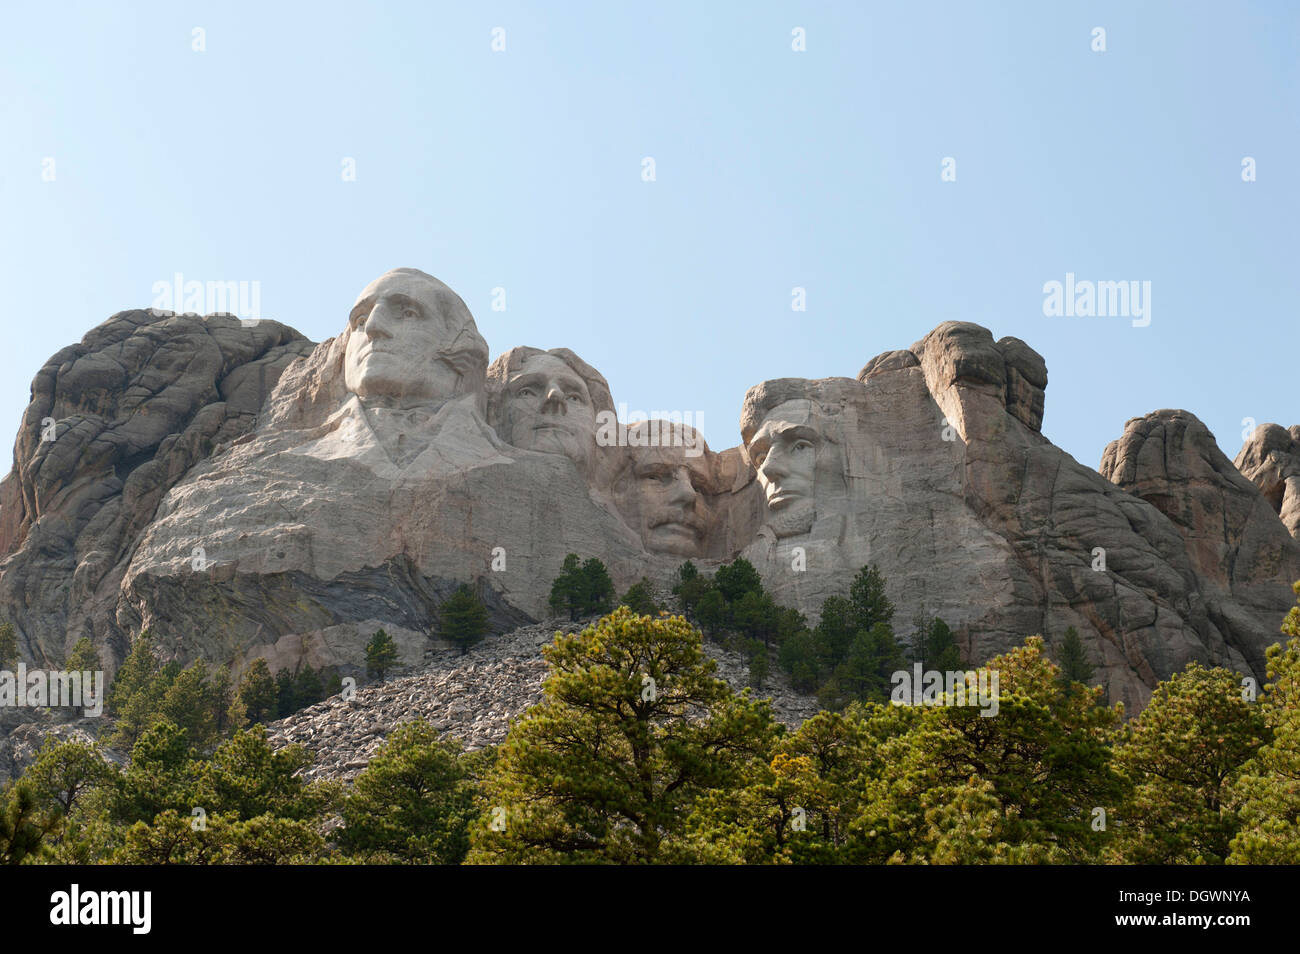 Büsten der vier Präsidenten geschnitzt in Felsen, Mount Rushmore National Memorial, in der Nähe von Rapid City, South Dakota, USA Stockfoto